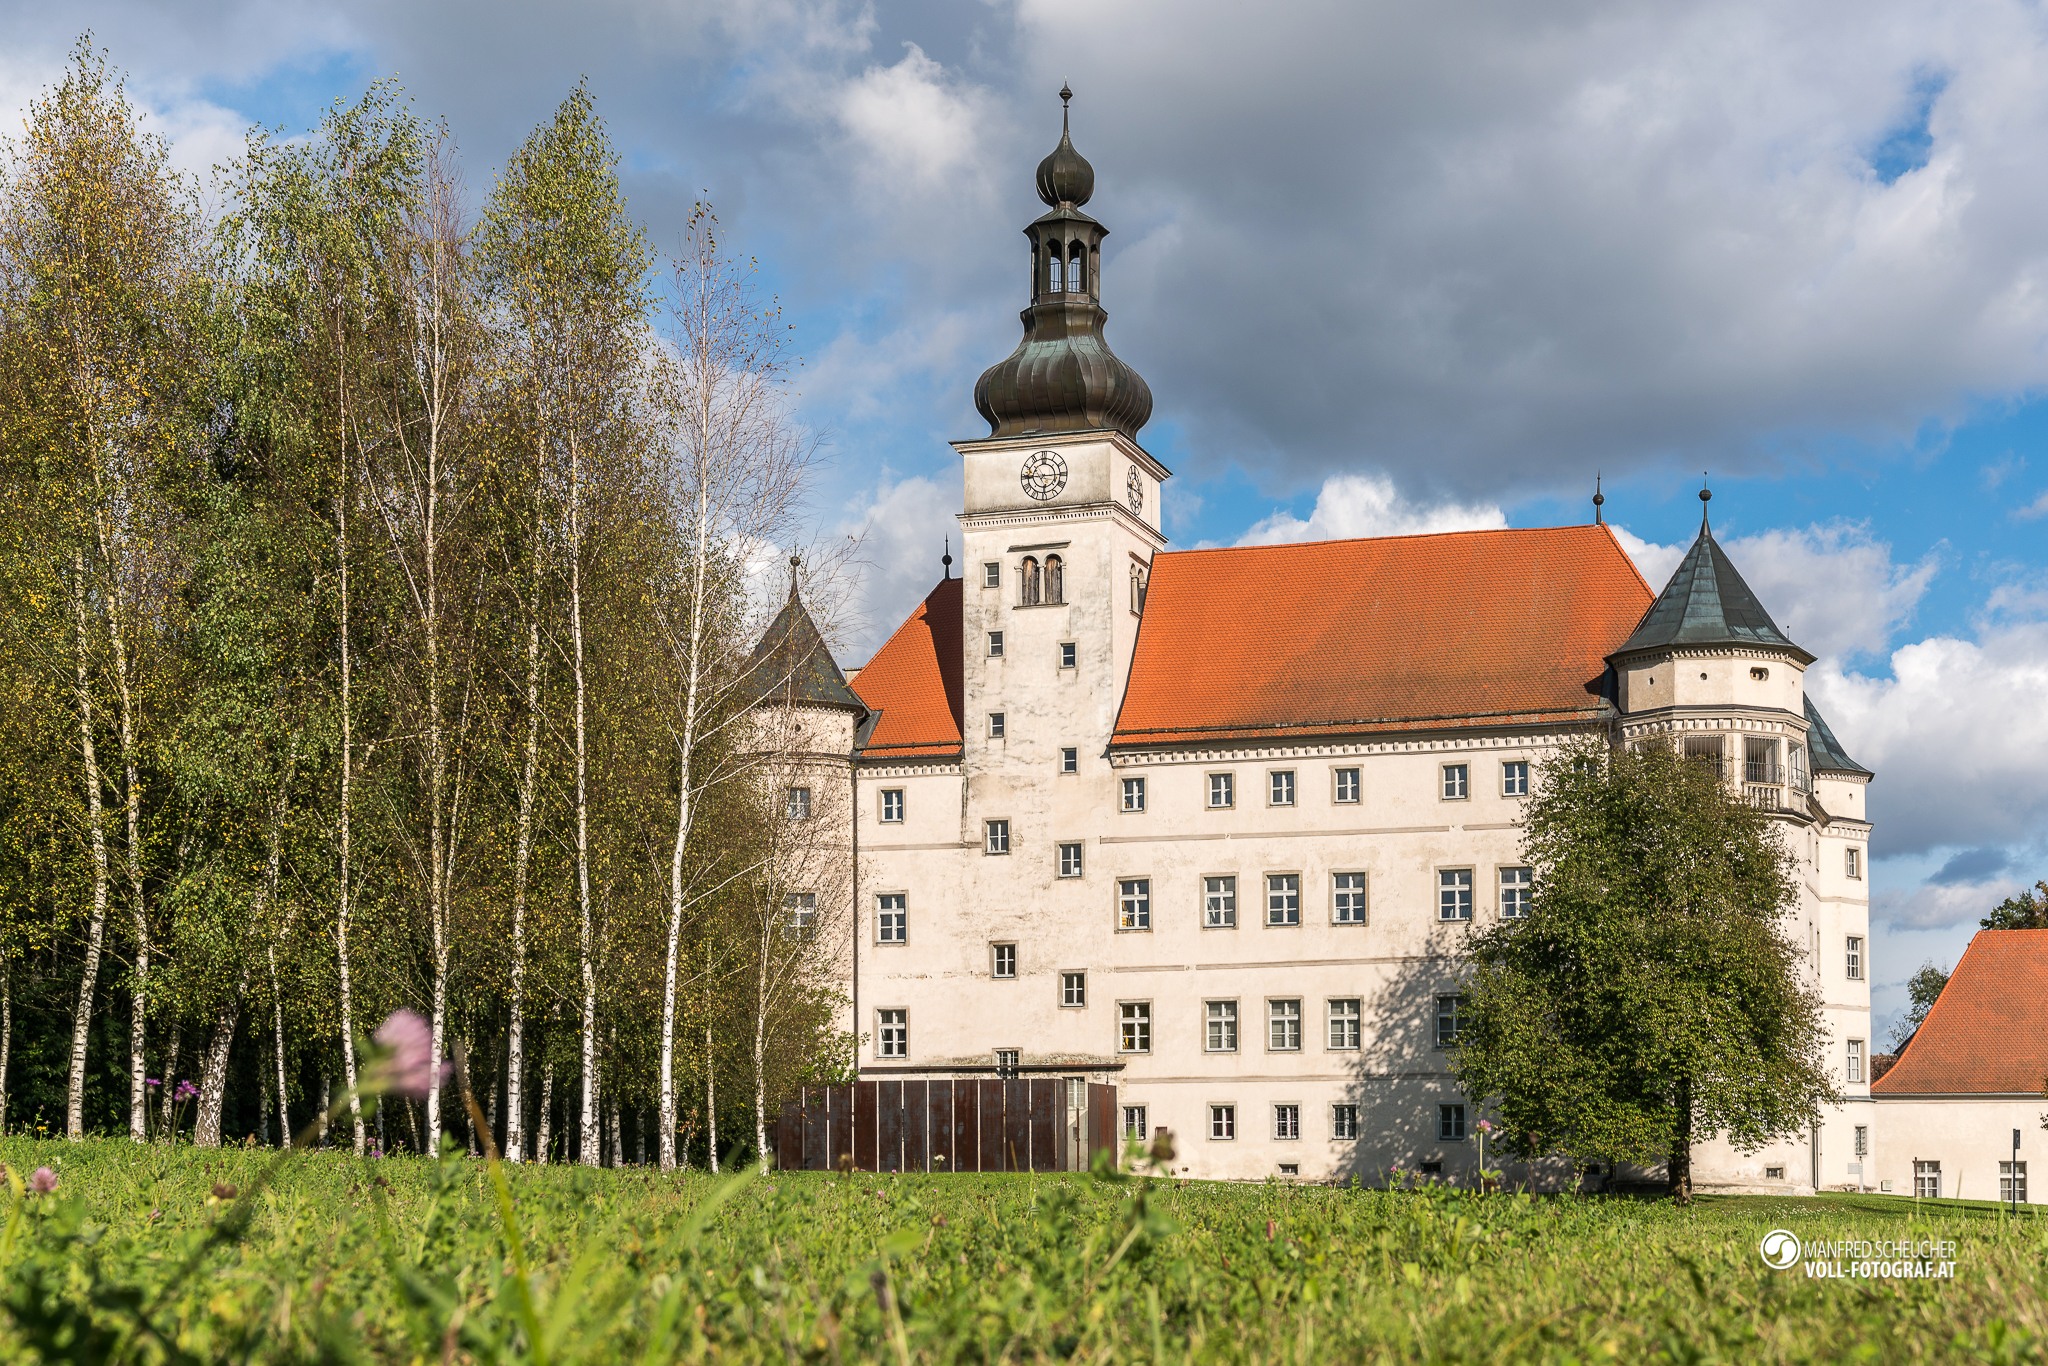 Im Lern- und Gedenkort Schloss Hartheim werden immer am ersten Sonntag des Monats von 14:30 bis 16:00 Uhr öffentliche Begleitungen durchgeführt. 